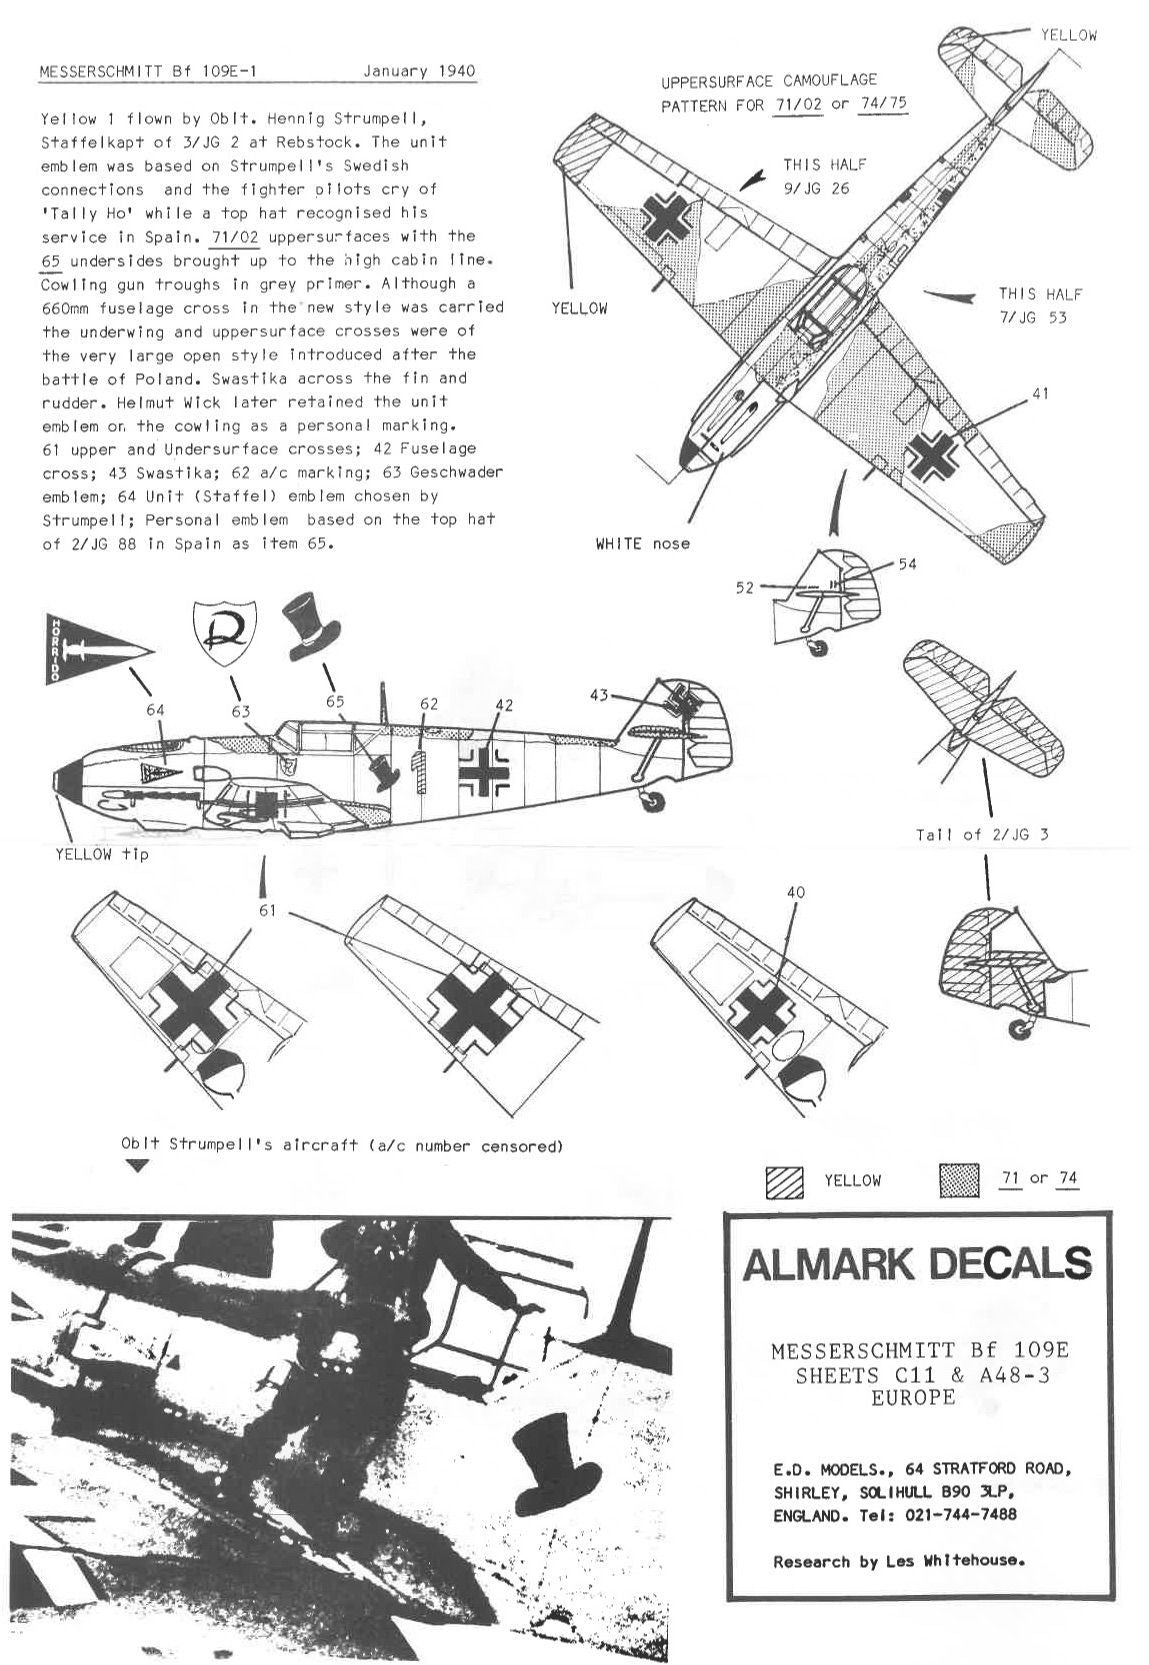 Almark A48-3 Messerschmitt Bf 109E Europe Decals 1/48